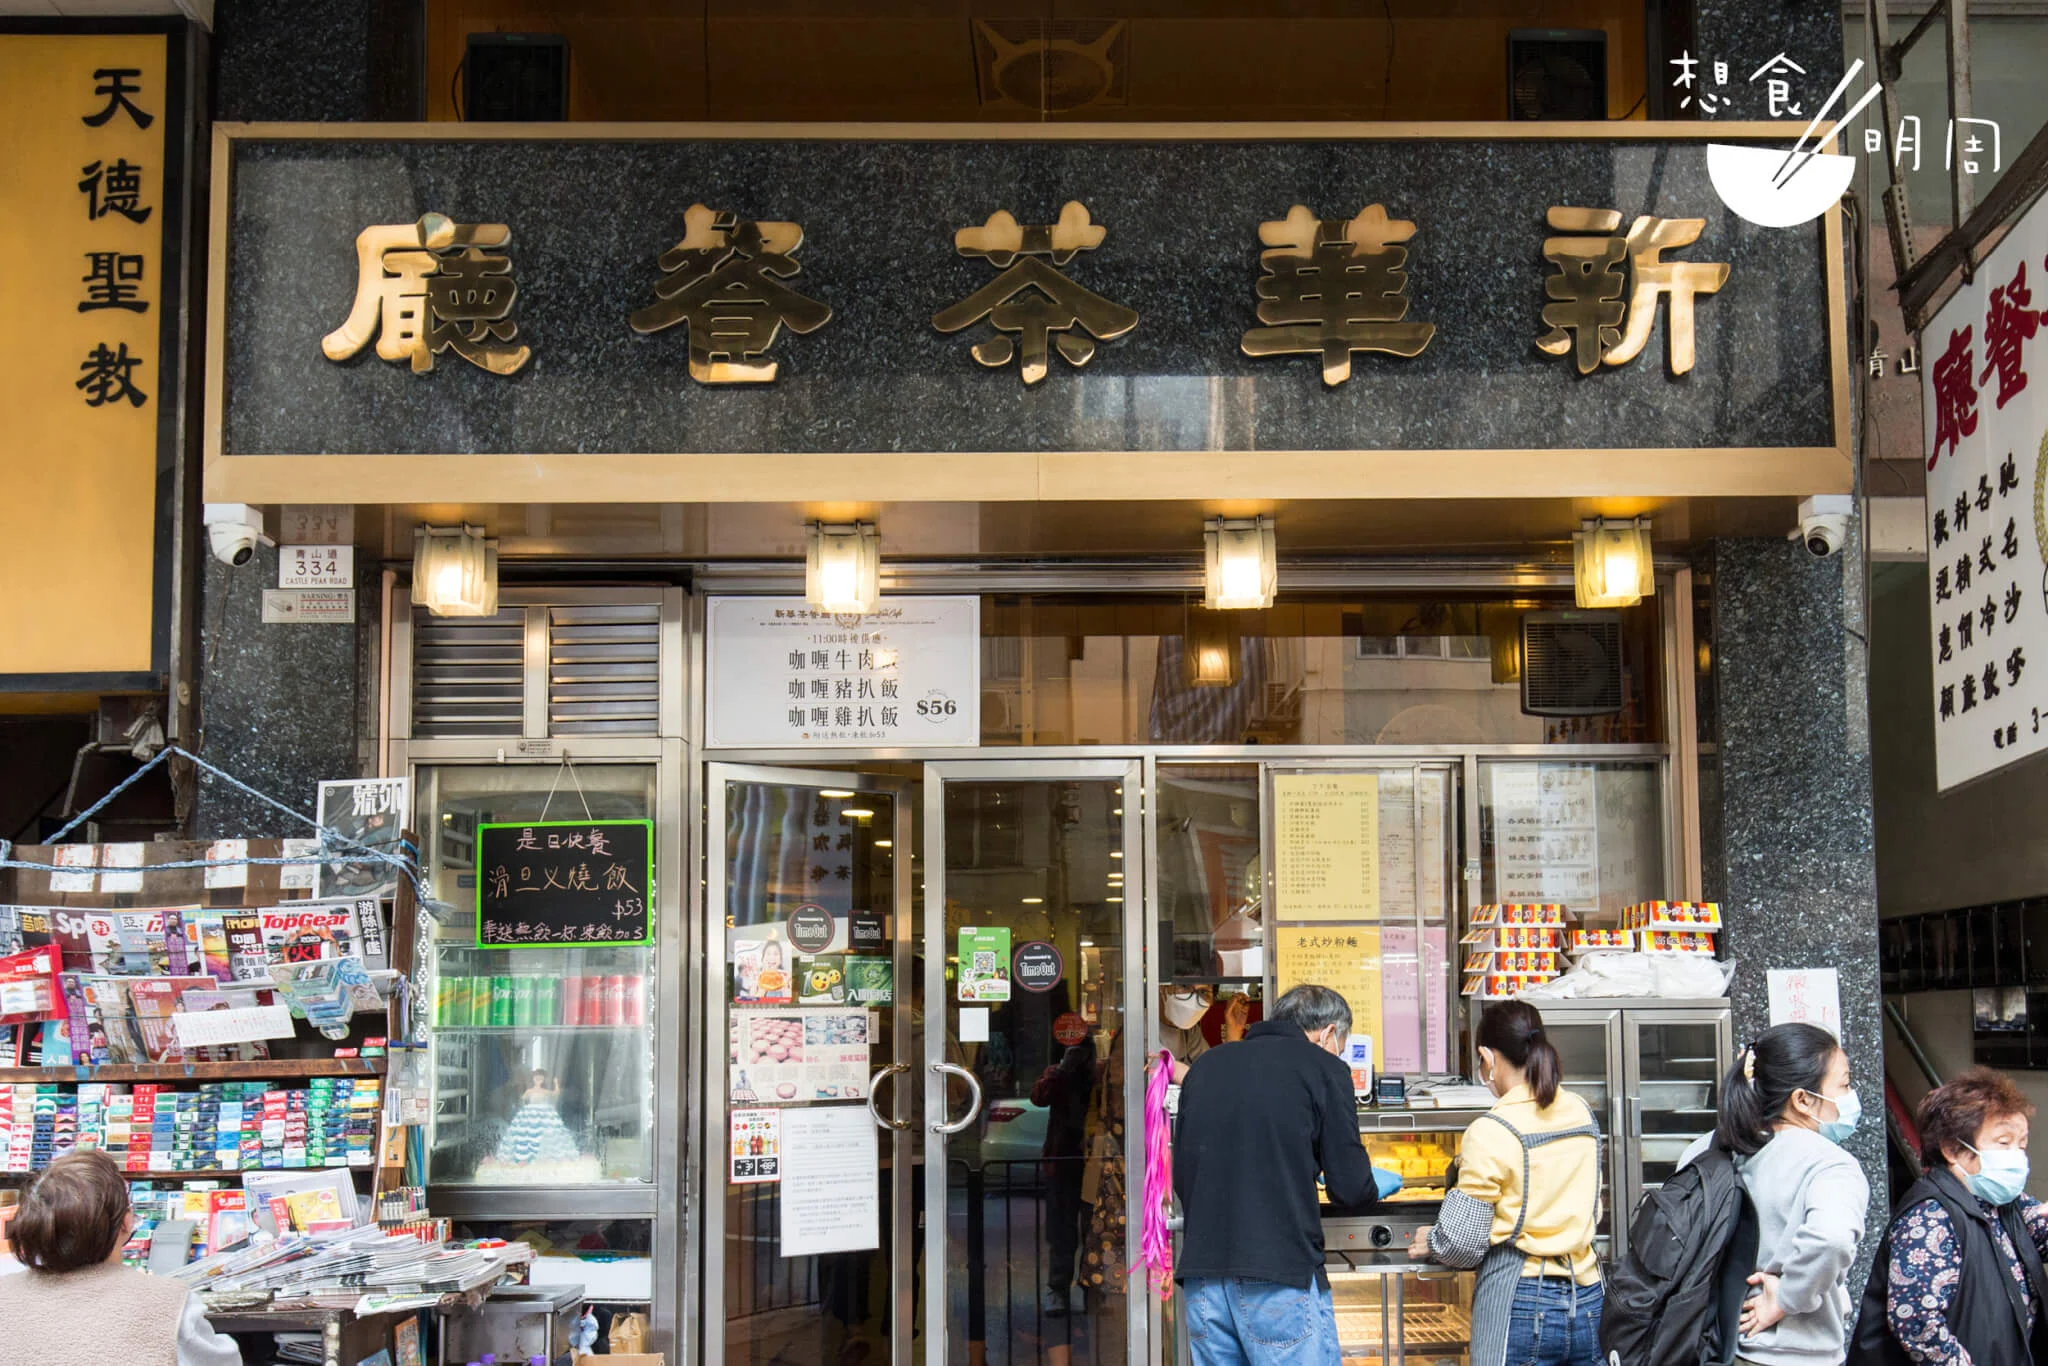 舖前有報紙攤、麵包櫃，是經典的茶餐廳門面設計。